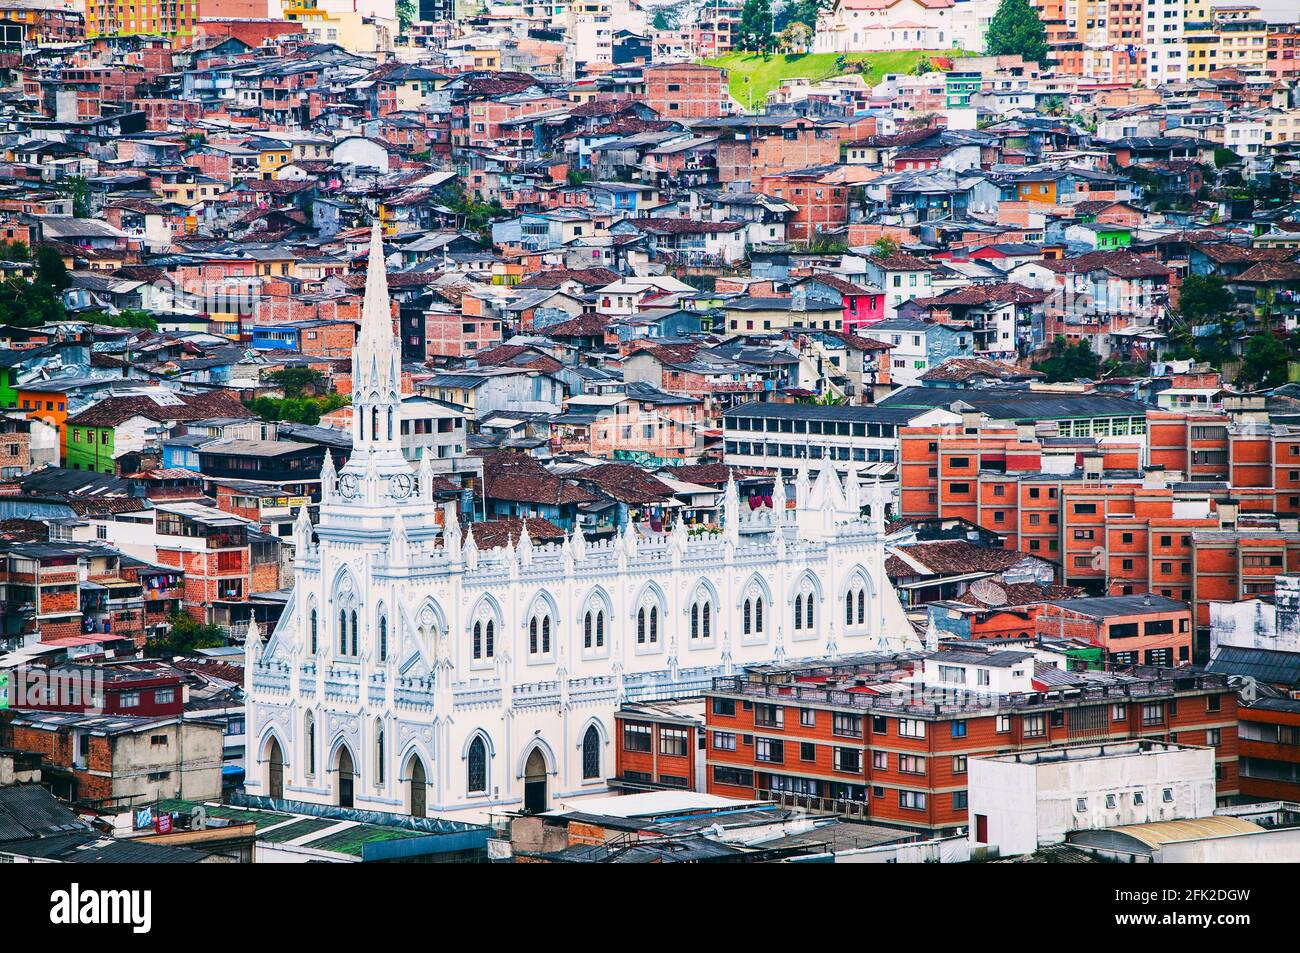 Vue sur la ville, ses maisons et son église. Manizales, Caldas, Colombie. Banque D'Images